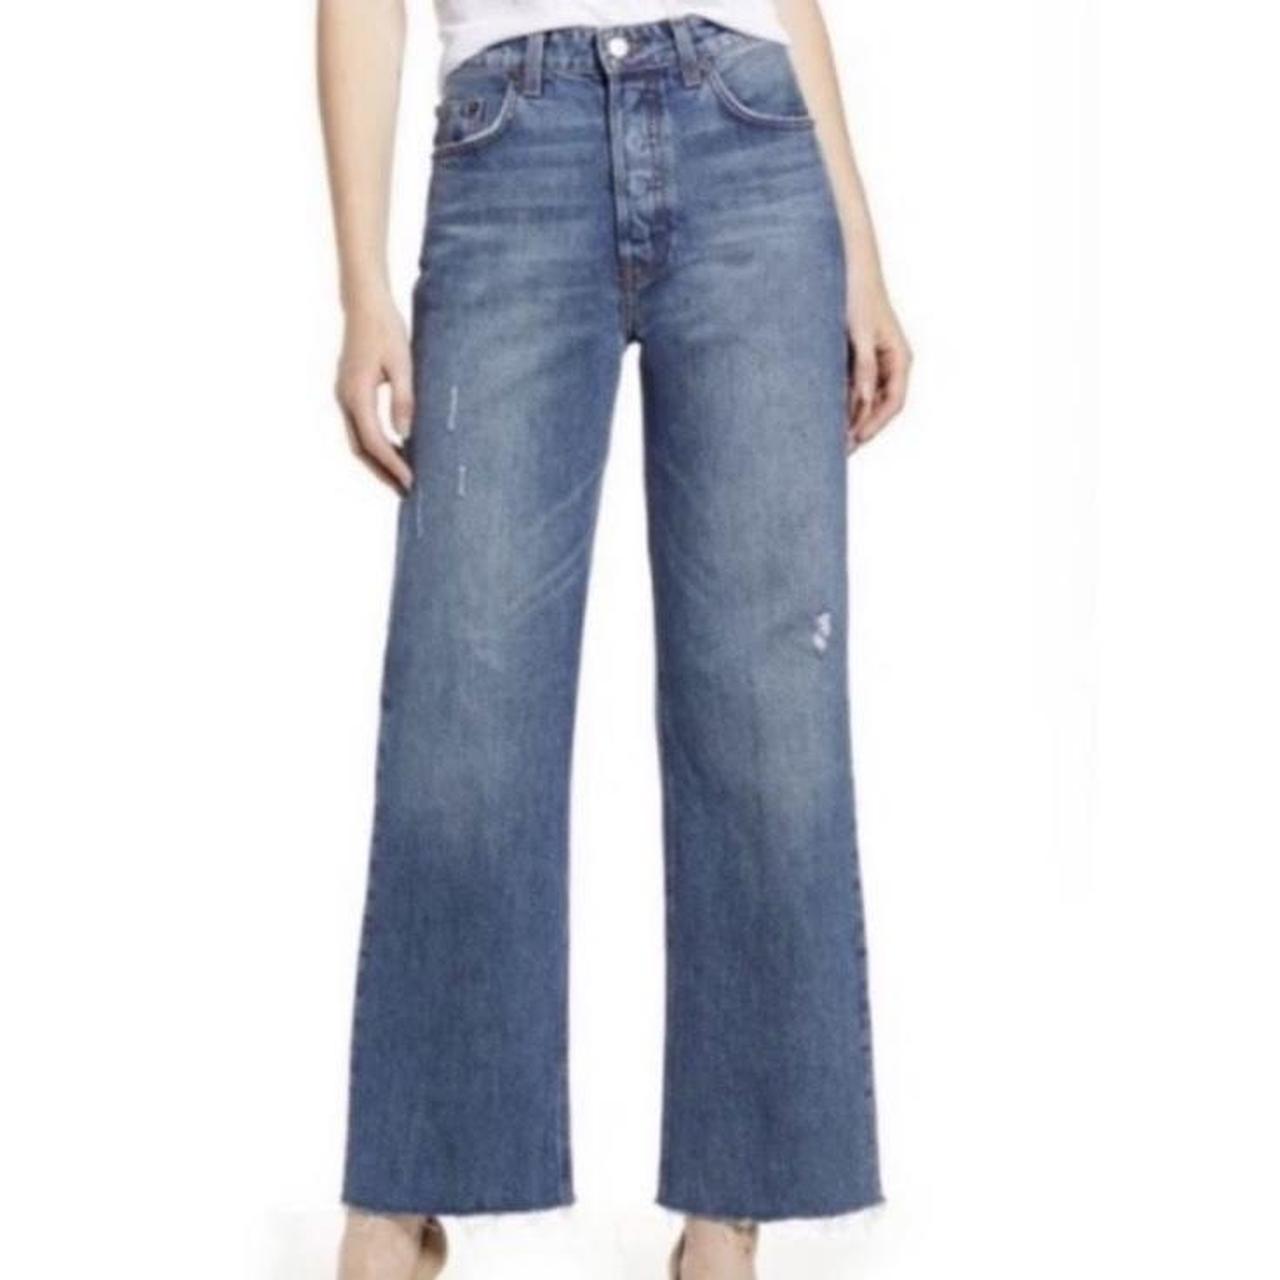 Reformation Fawcett jeans in Celtic 👱‍♀️ Size 27, true... - Depop